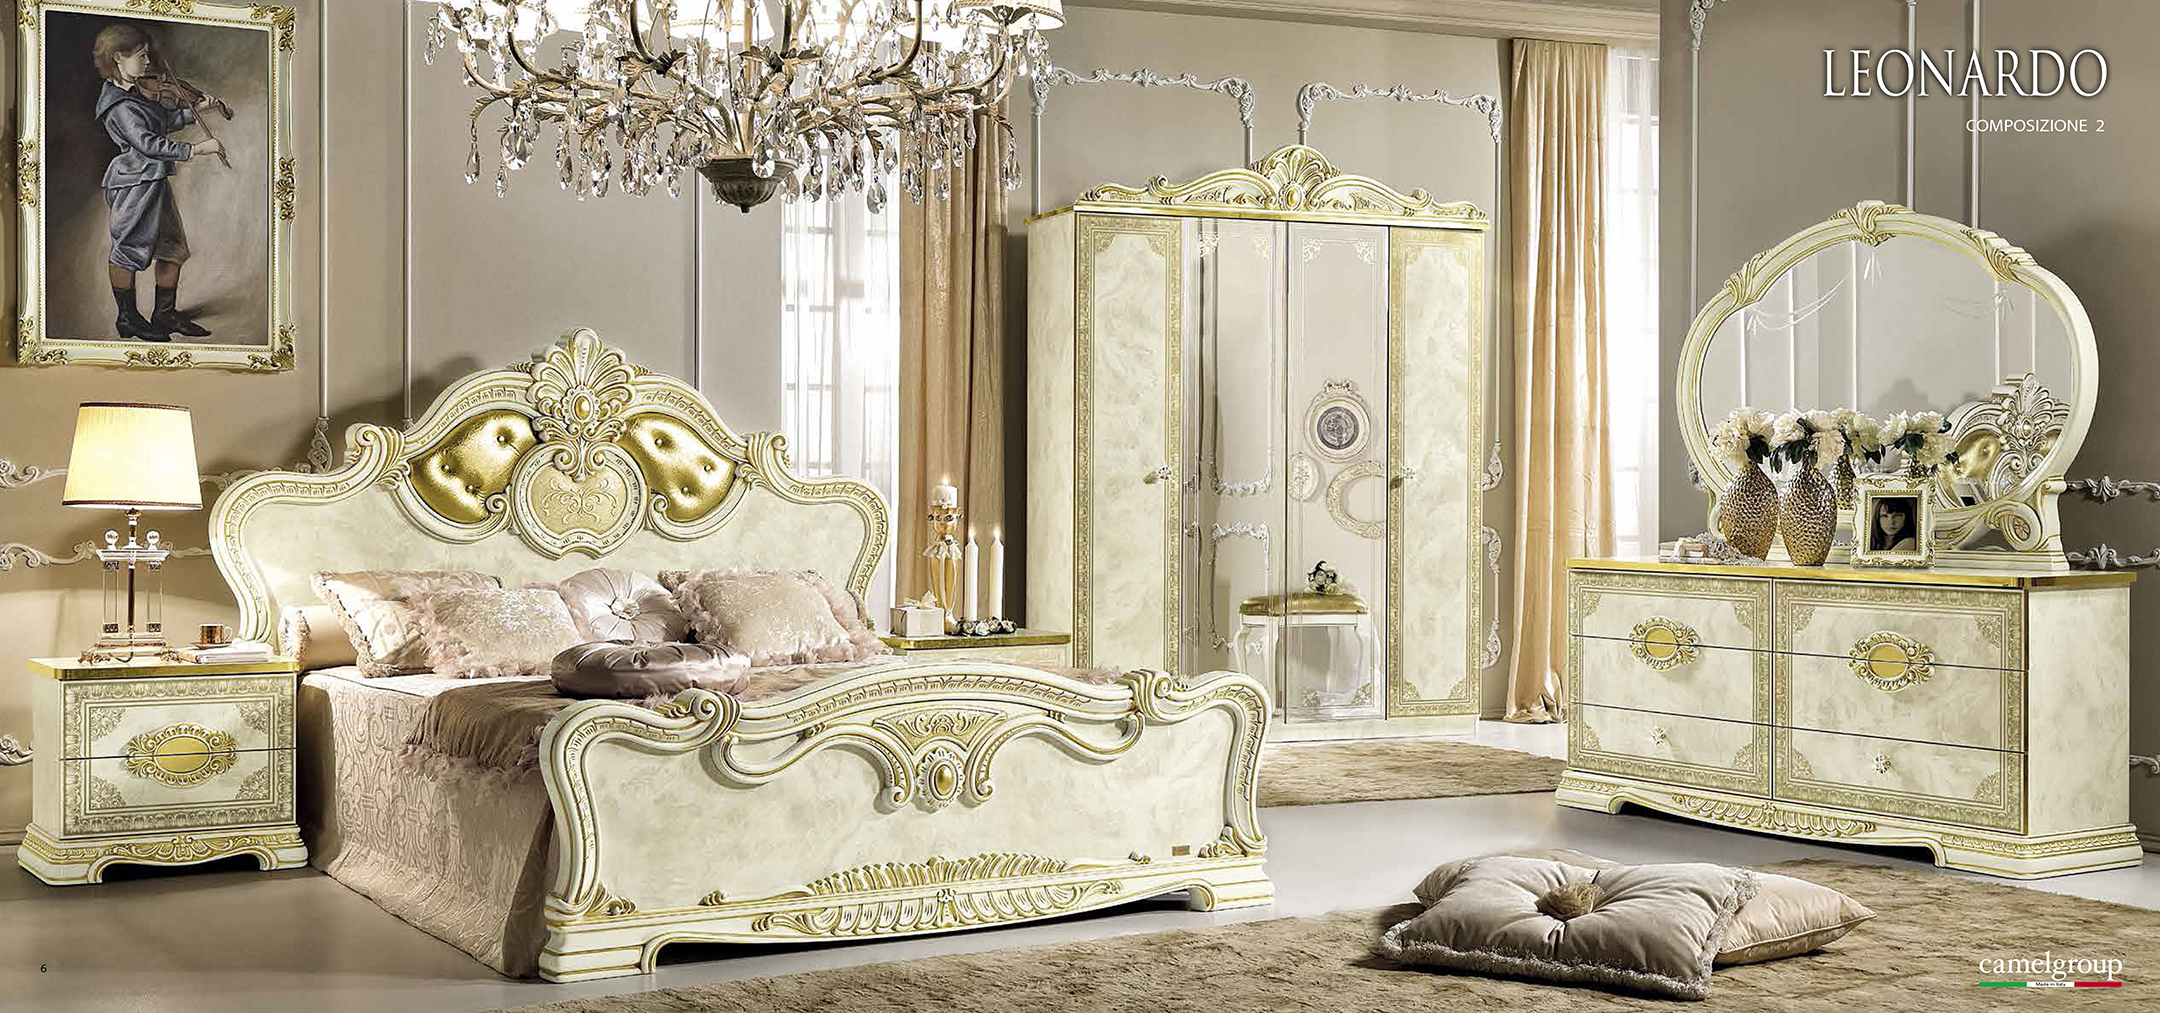 Bedroom Furniture Mirrors Leonardo Bedroom Additional Items